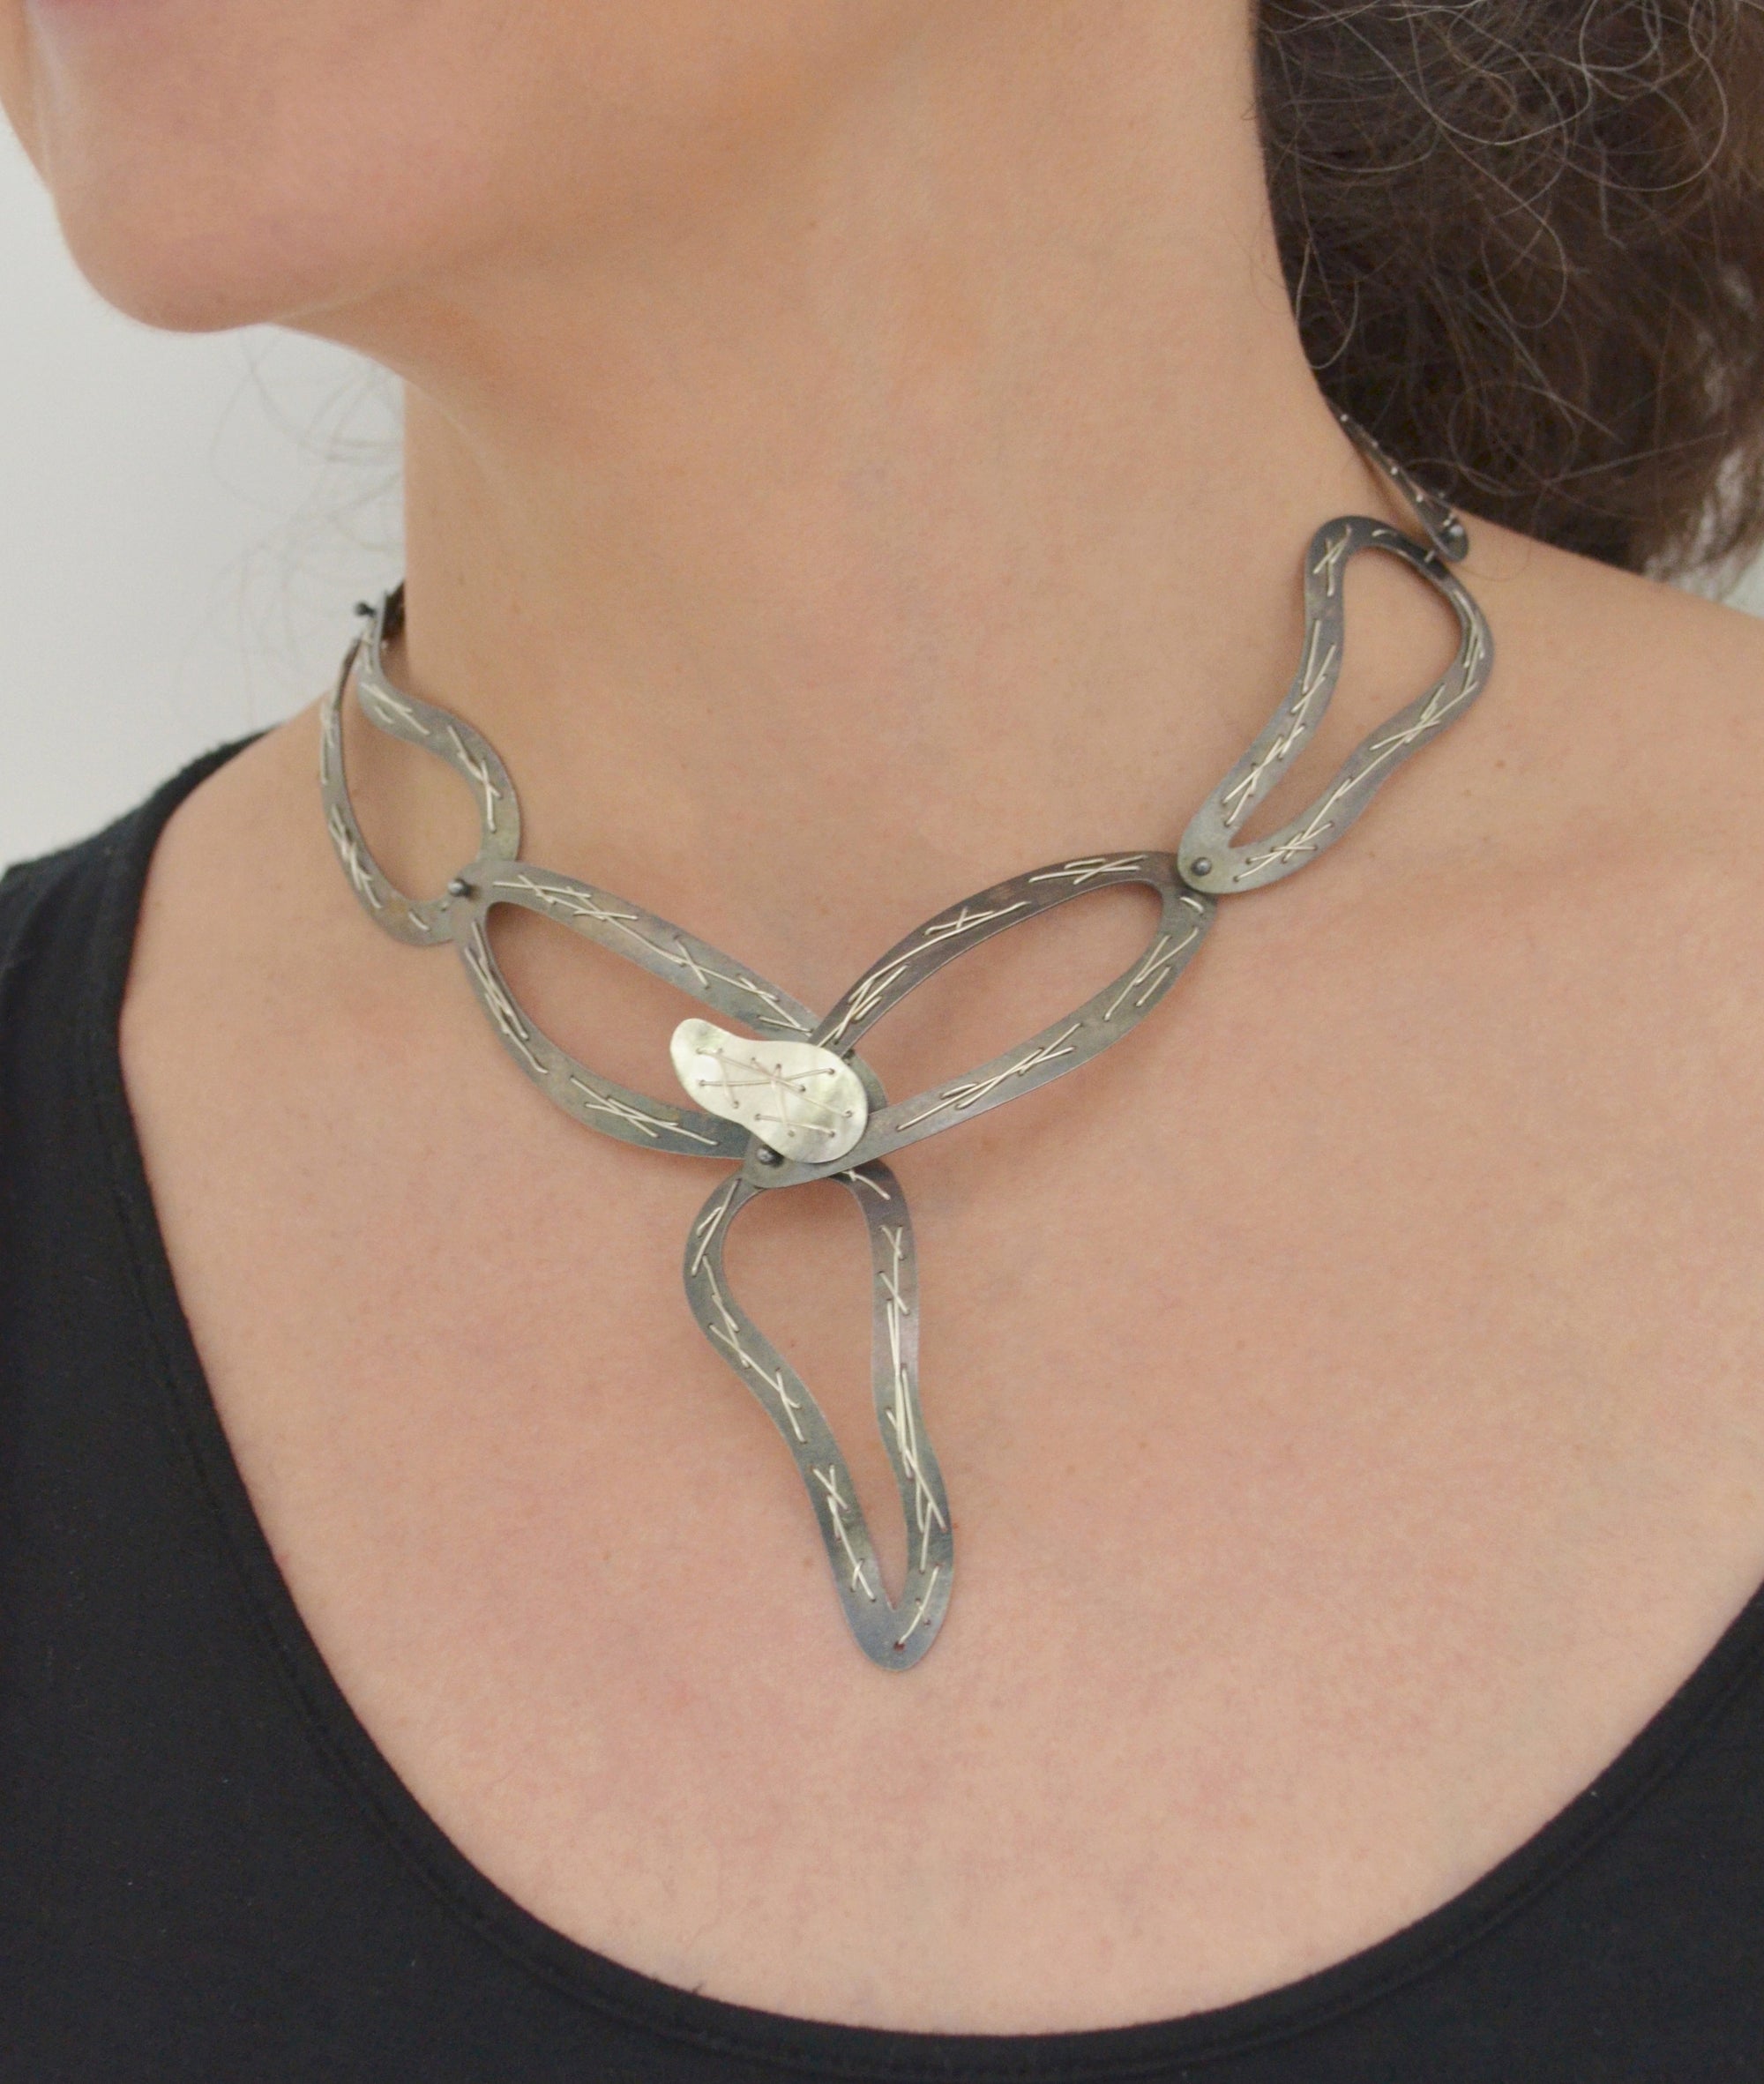 Suzanne Schwartz wearing Stitched Necklace